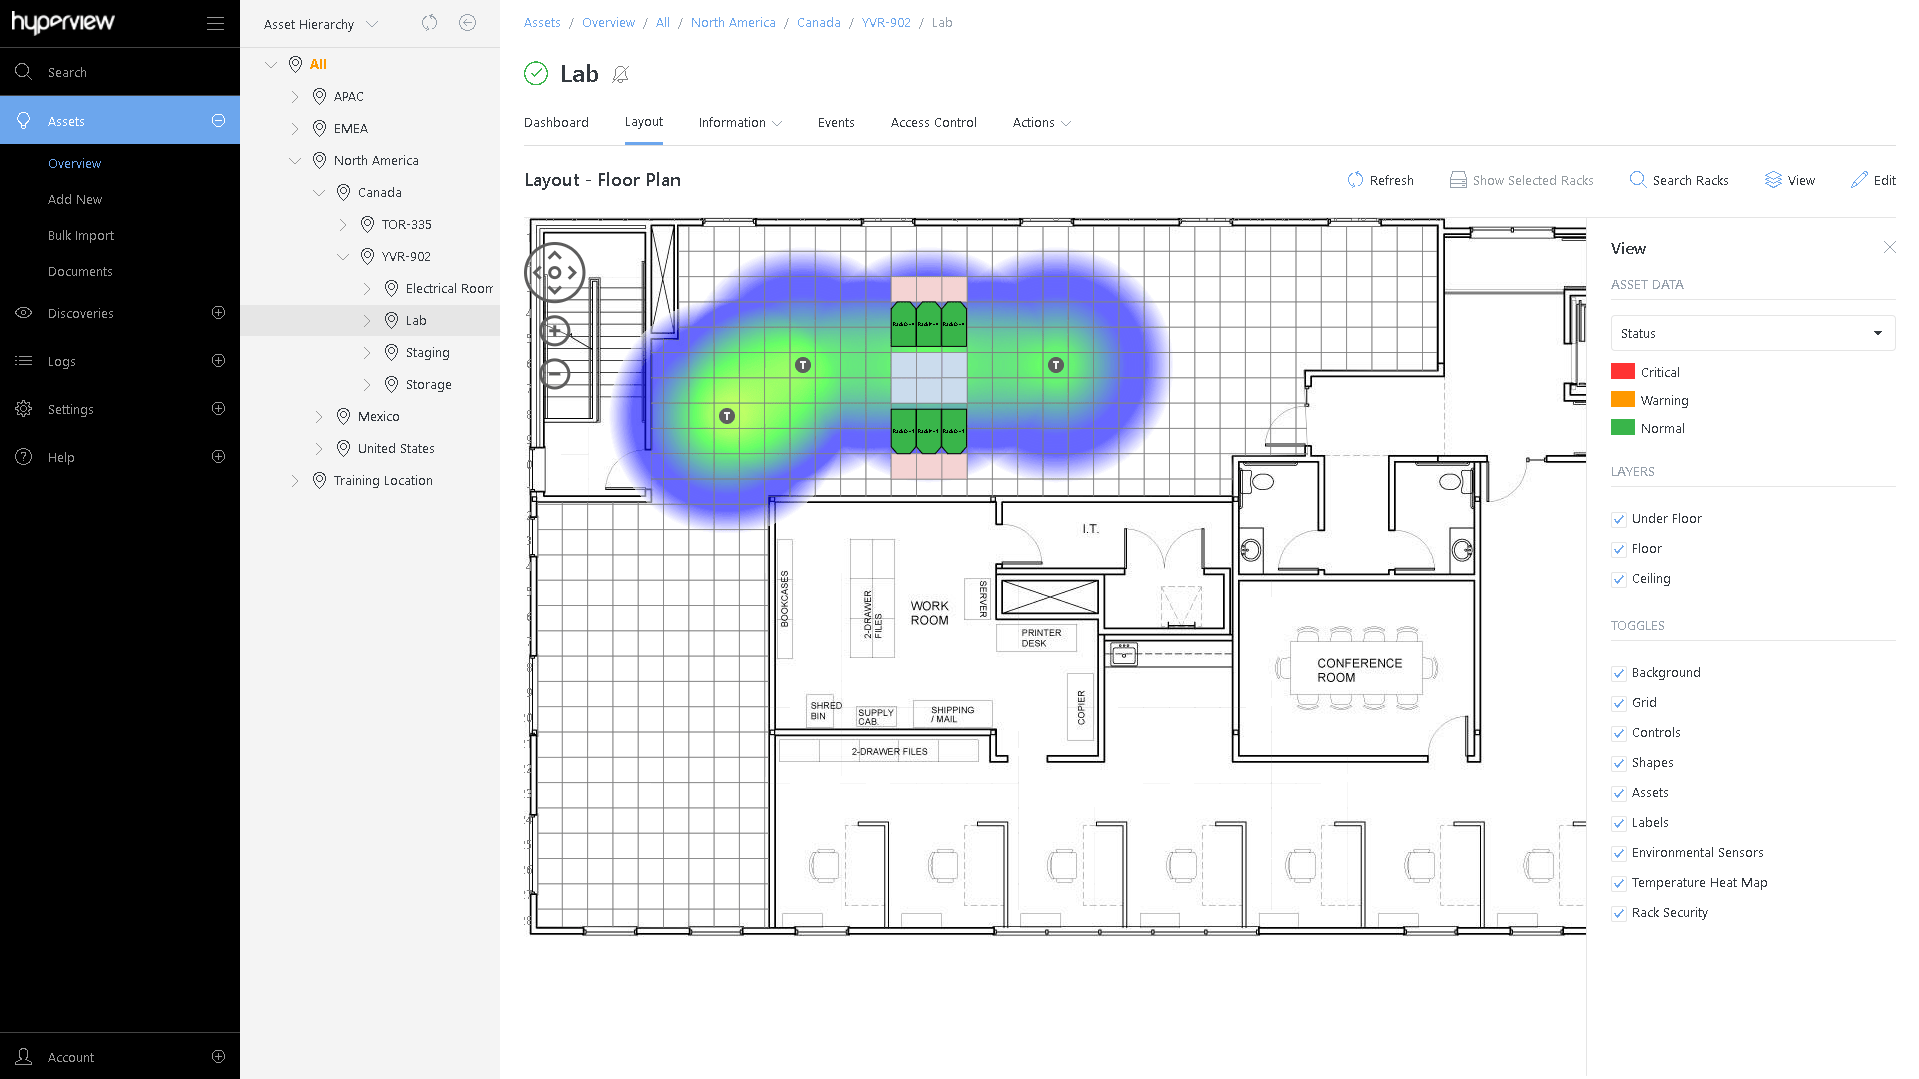 Datacenter heat map